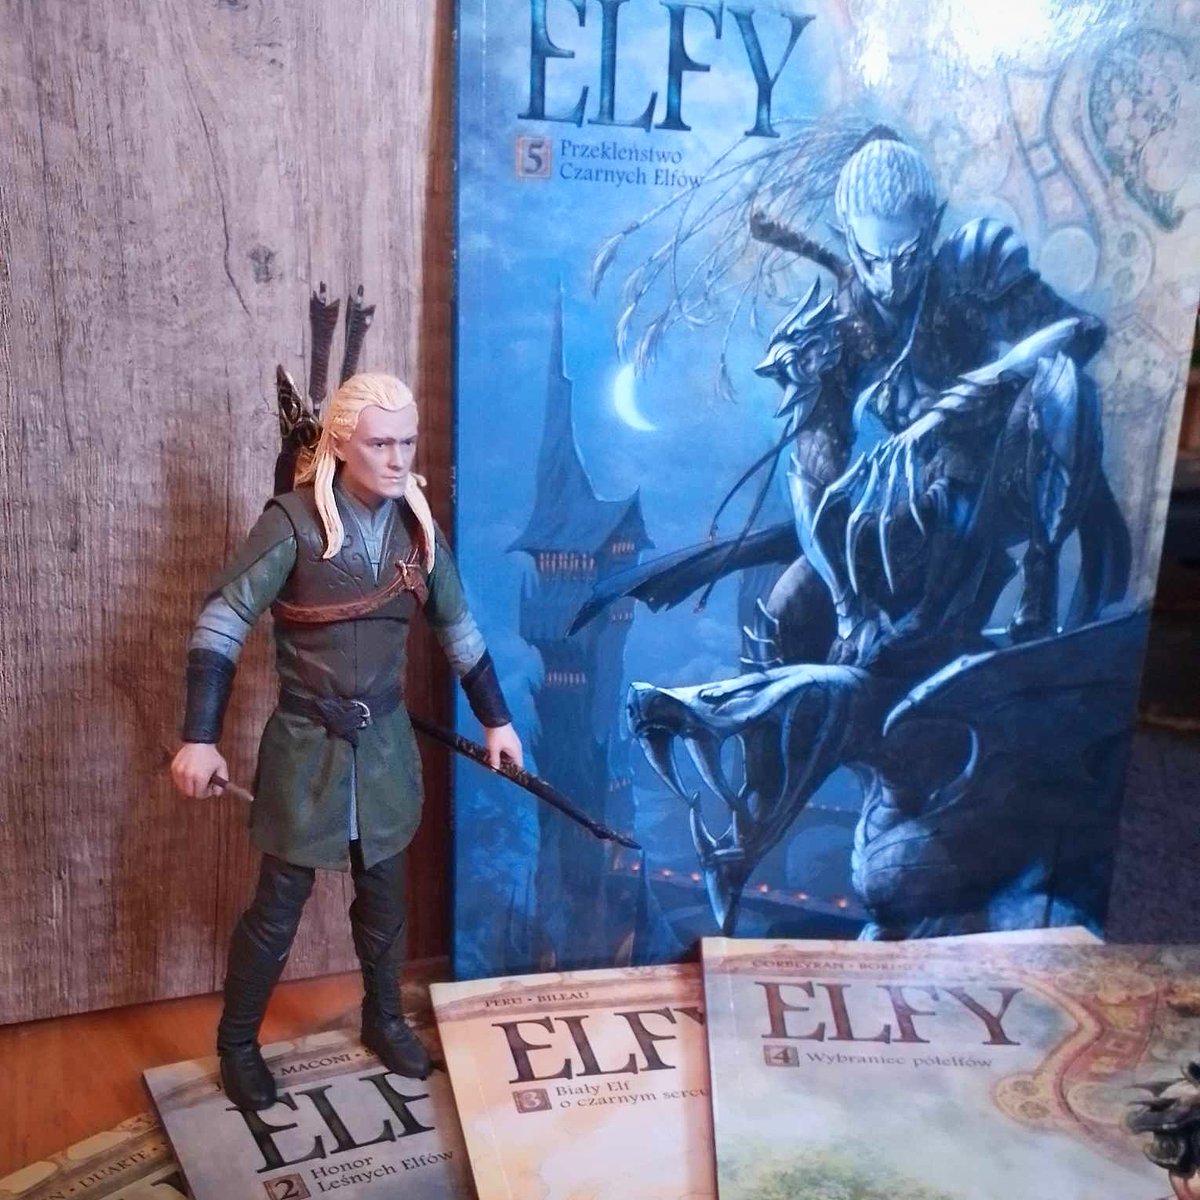 #Komiksy z serii #ŚwiatAkwilonu mają to do siebie, że swoją fabułą potrafią zaskoczyć odbiorcę. Nie inaczej jest w przypadku Przekleństwa Czarnych #Elfów

#współpracarecenzencka, za #komiks dziękujemy #egmont

ostatniatawerna.pl/elfi-skrytoboj…

#darkelves #darkfantasy #fantasy #elves